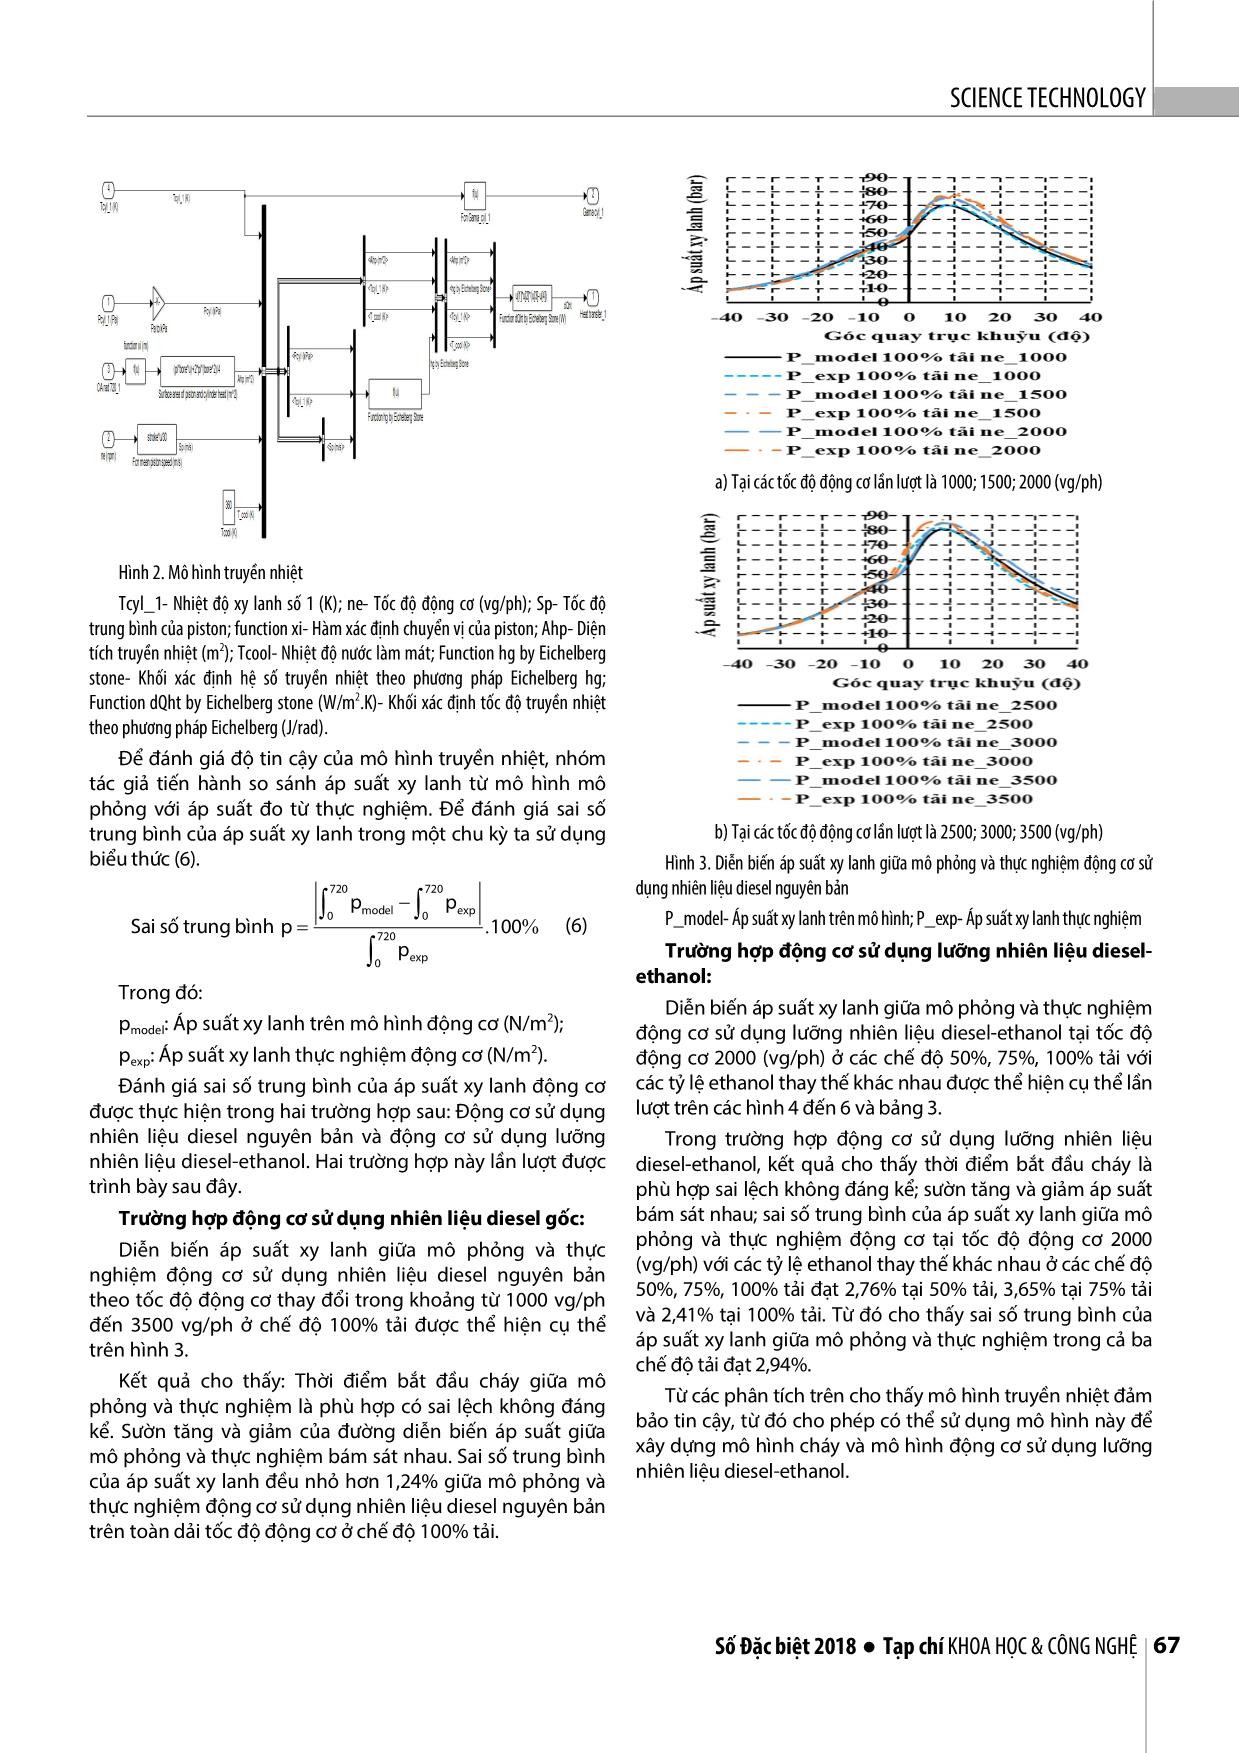 Nghiên cứu xây dựng mô hình truyền nhiệt của động cơ diesel sử dụng lưỡng nhiên liệu Diesel-Ethanol trang 4